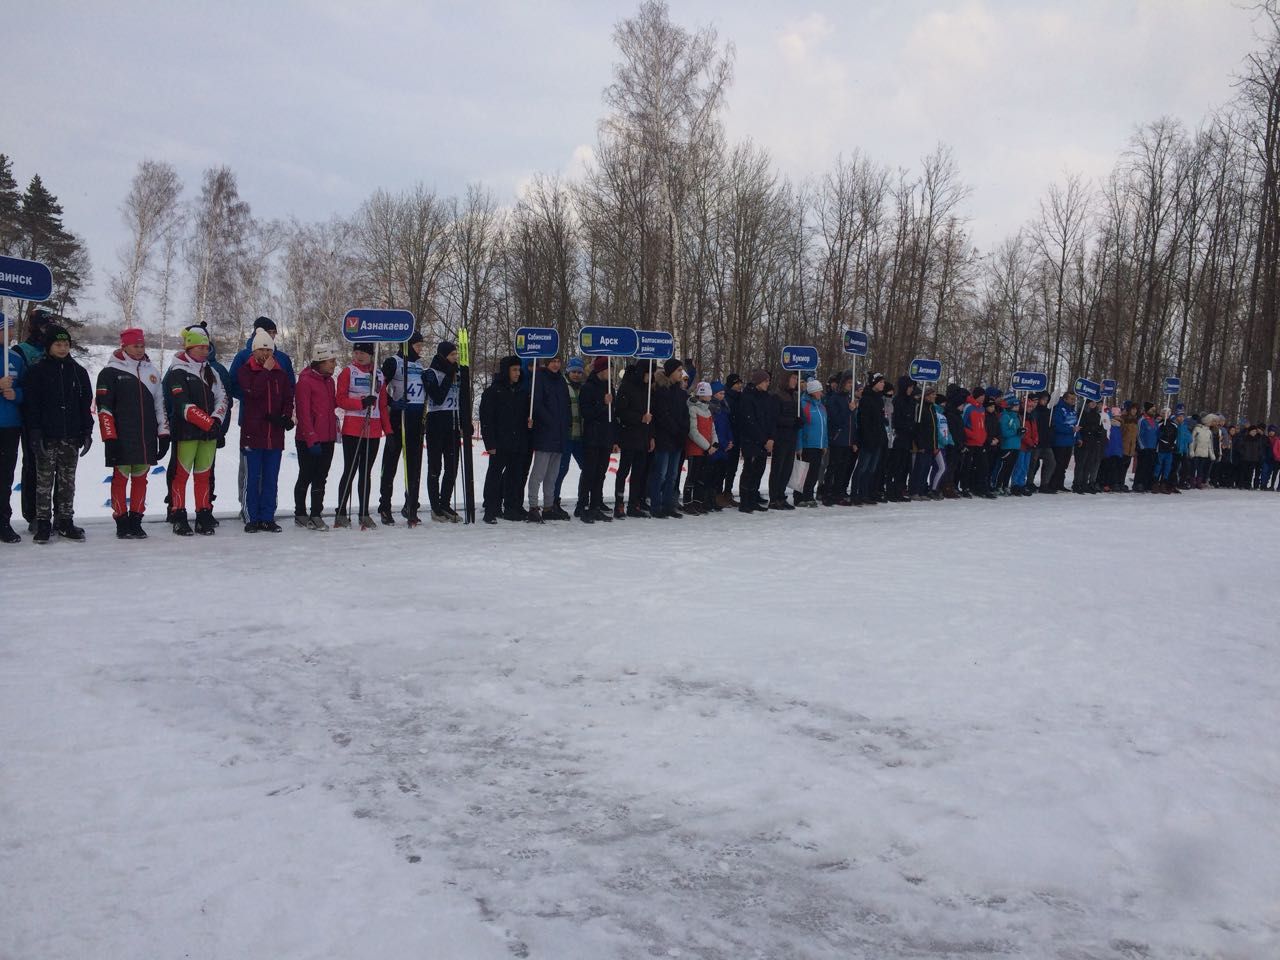 В Заинском районе проходит Первенство Республики Татарстан по лыжным гонкам среди юношей и девушек